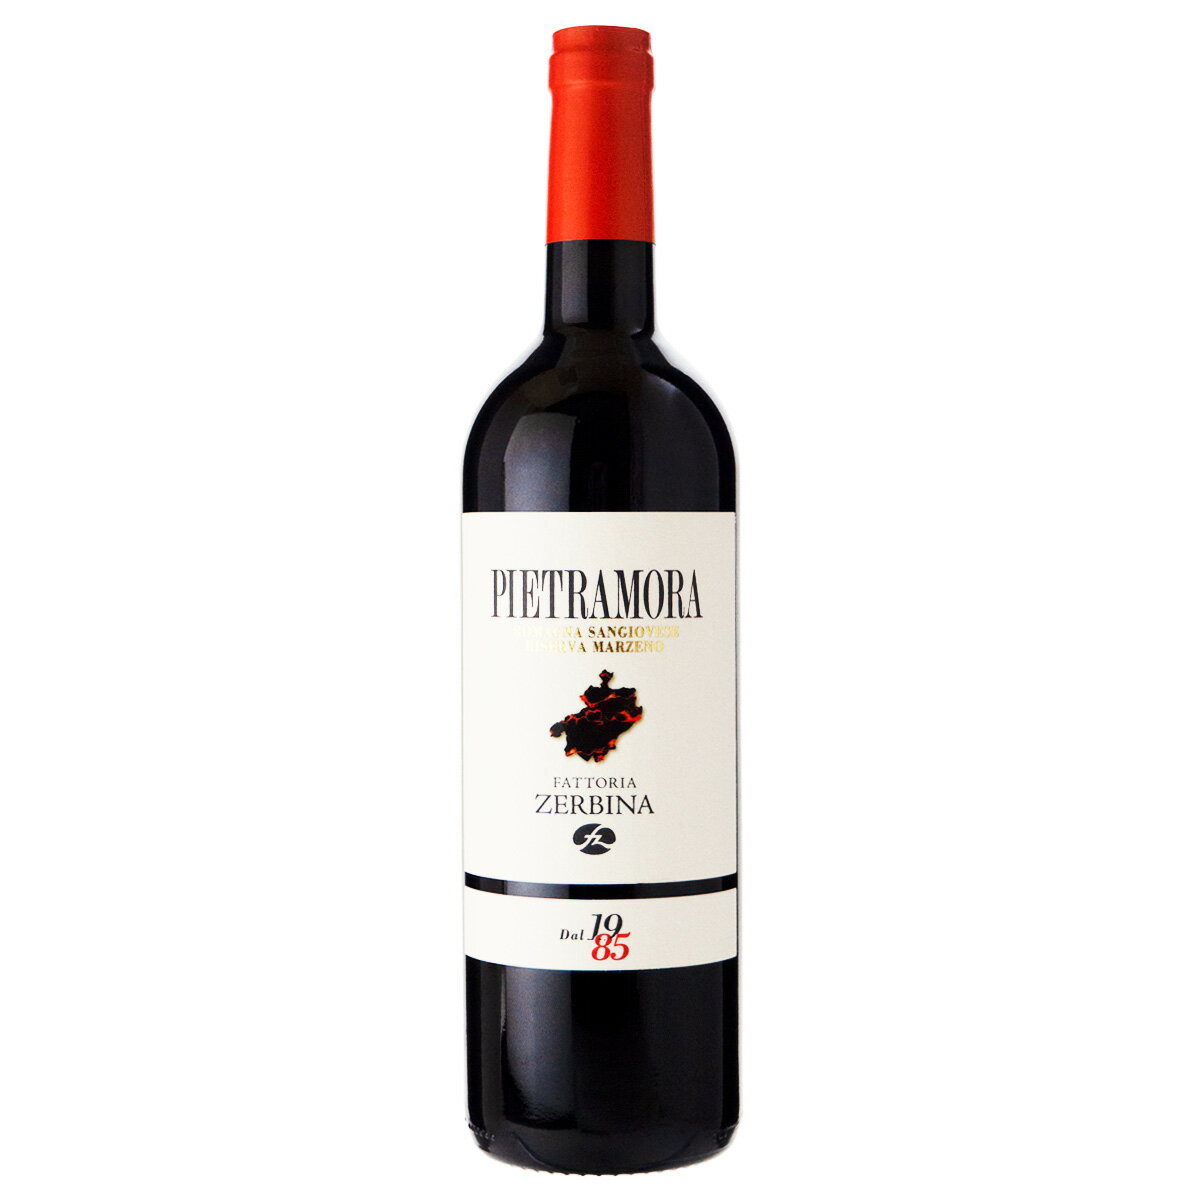 ファットリア ゼルビーナ ピエトラモーラ 2015 750ml 赤ワイン イタリア (x11-6119)